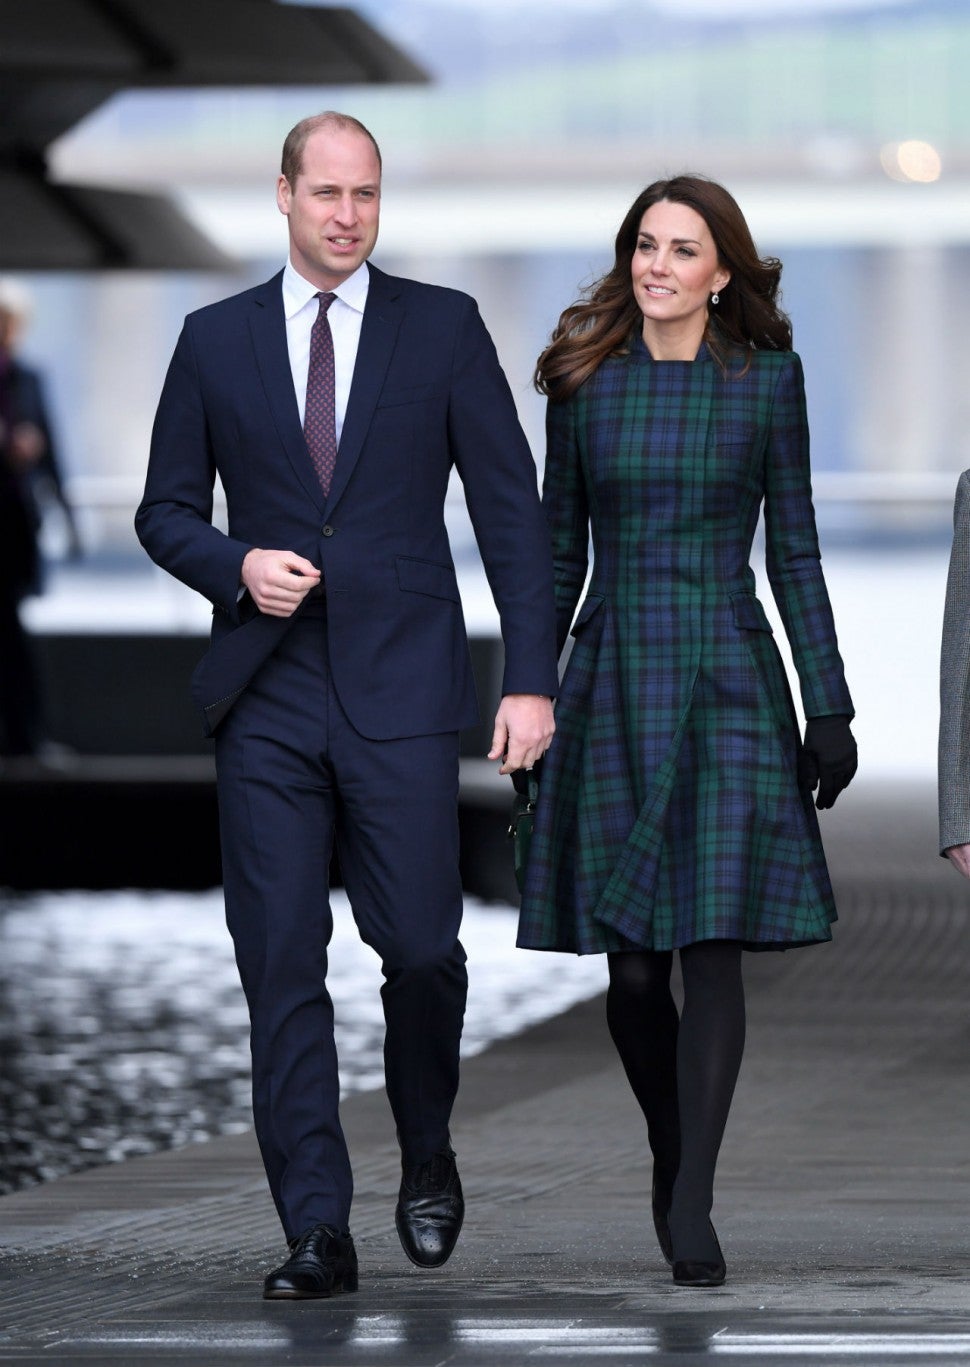 Mọi khoảnh khắc mà đôi vợ chồng Hoàng gia đi bên cạnh nhau đều đẹp như một thước phim thời trang.